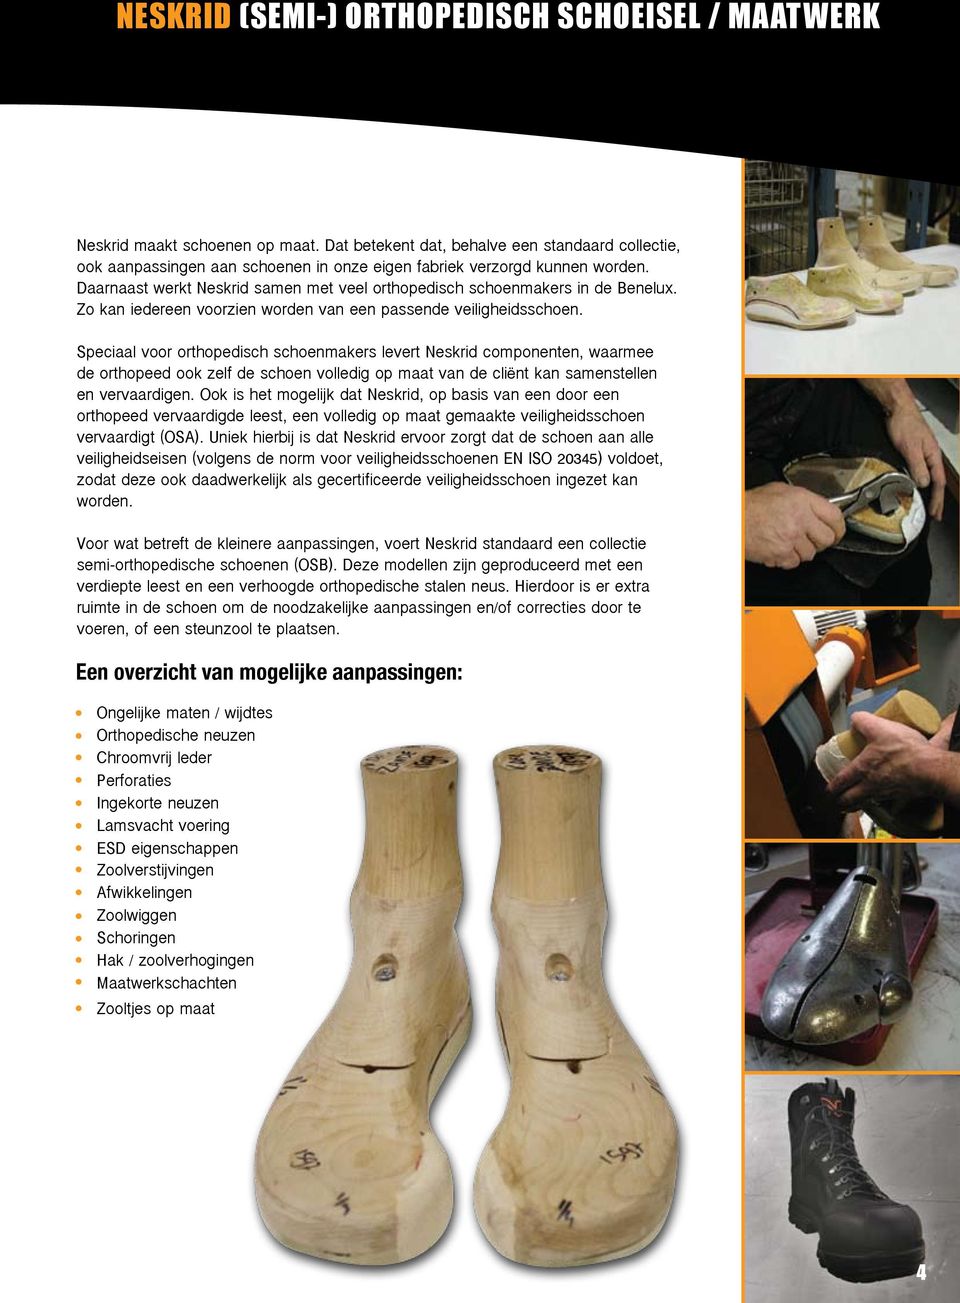 Daarnaast werkt Neskrid samen met veel orthopedisch schoenmakers in de Benelux. Zo kan iedereen voorzien worden van een passende veiligheidsschoen.